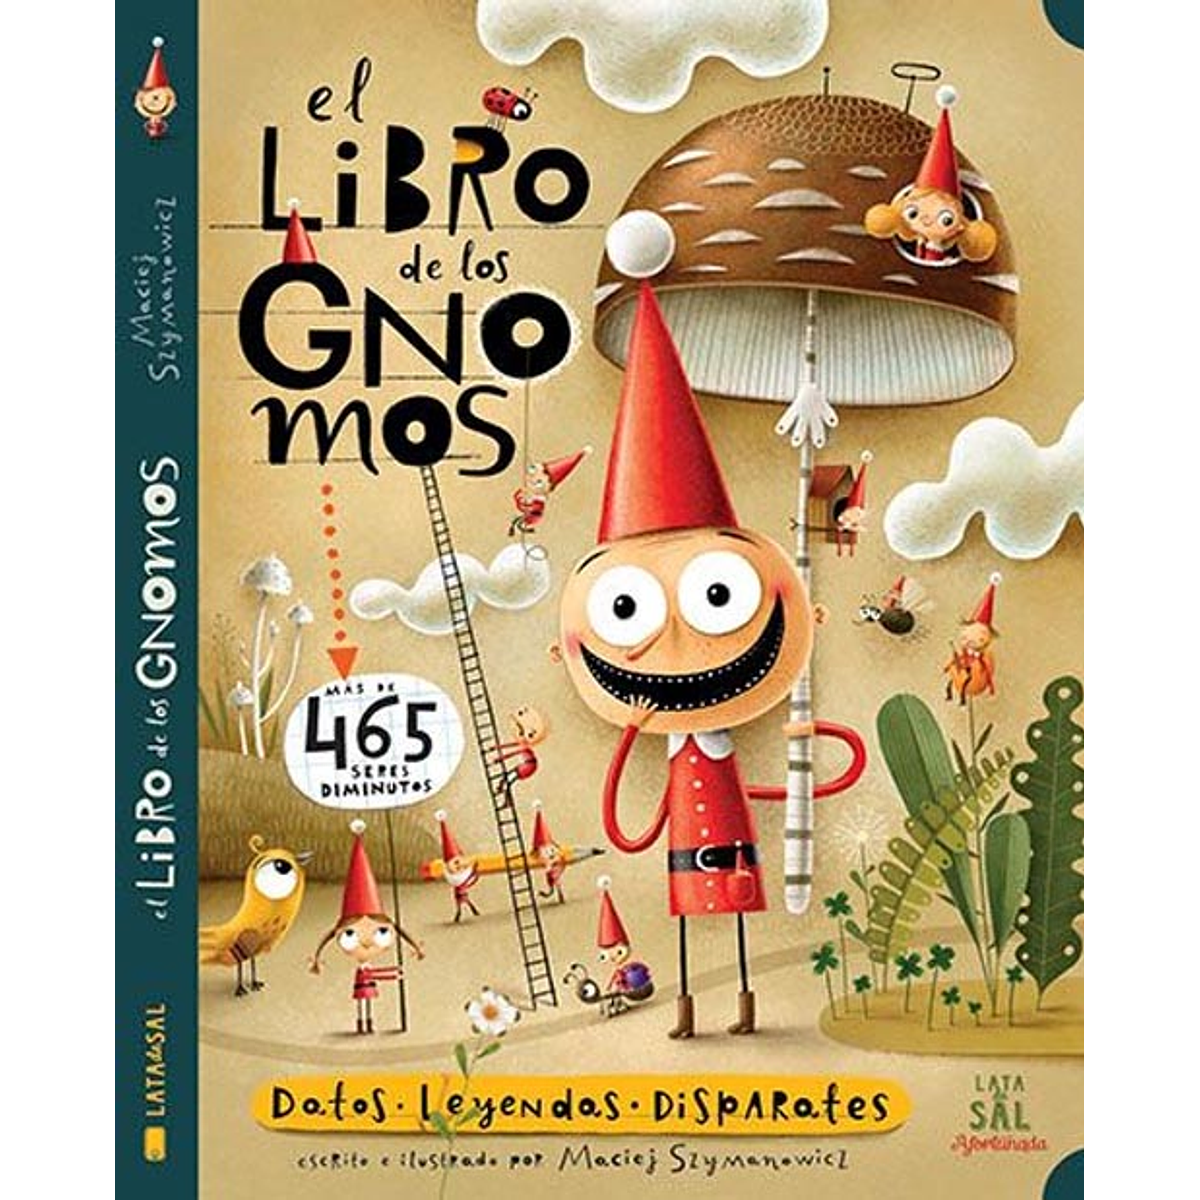 LIBRO DE LOS GNOMOS, EL: DATOS, LEYENDAS, DISPARATES